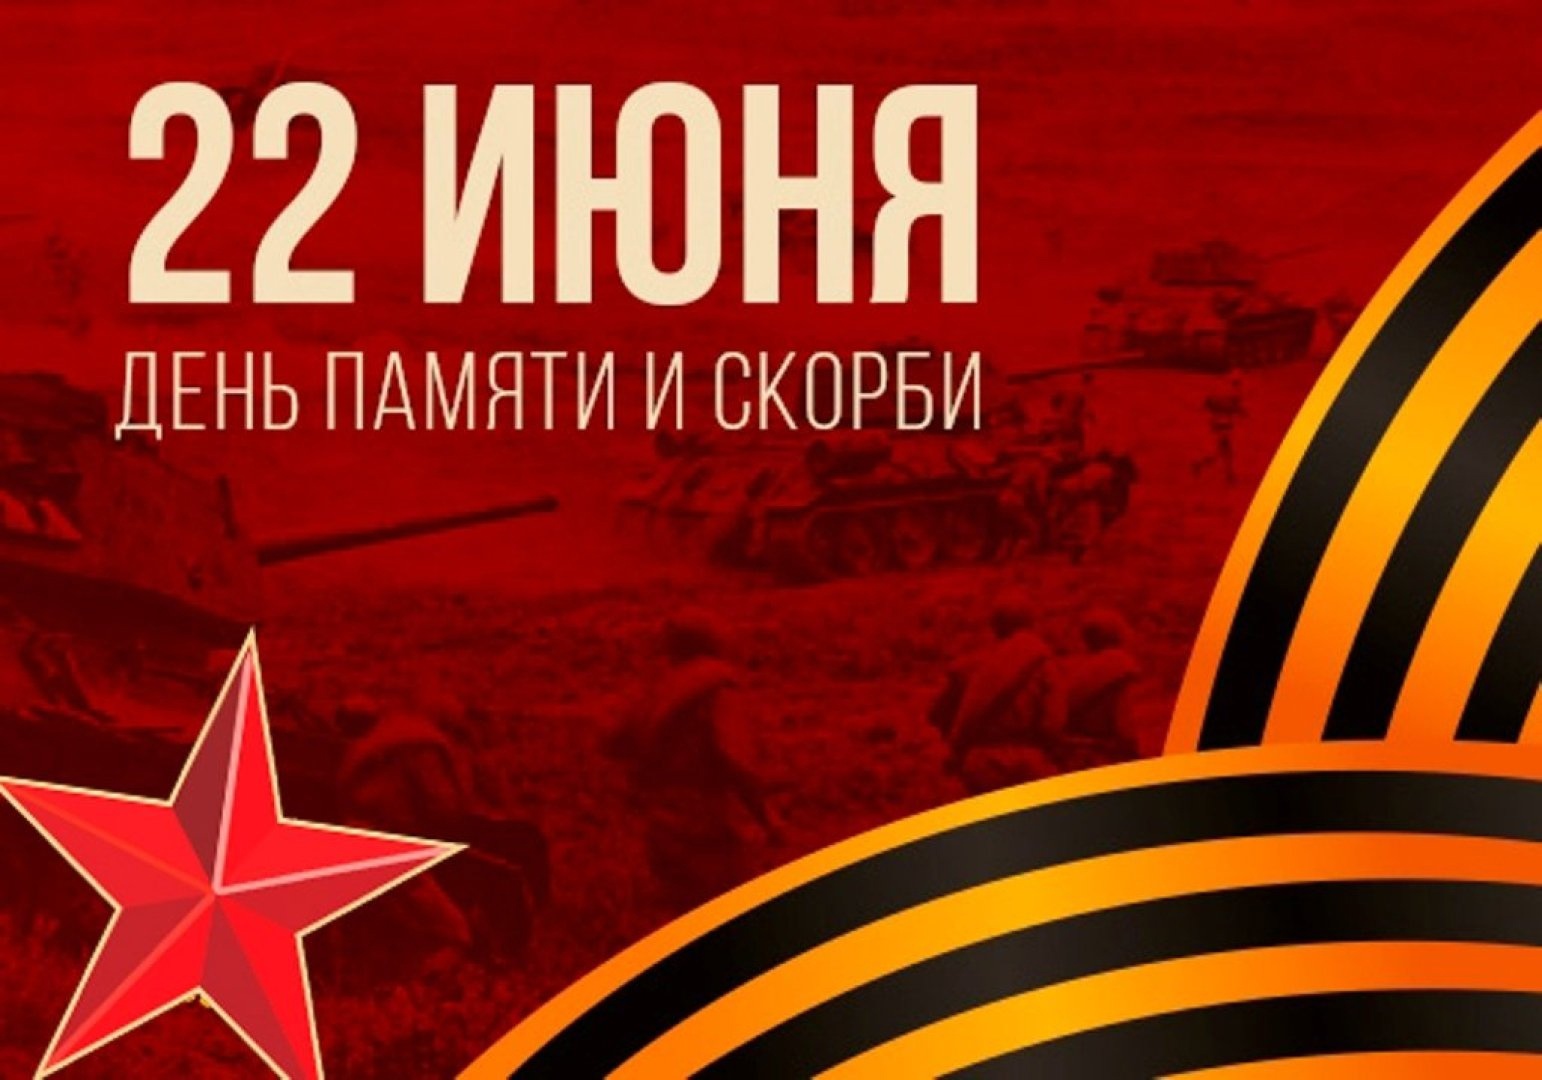 День памяти и скорби - день начала Великой Отечественной войны 1941 года